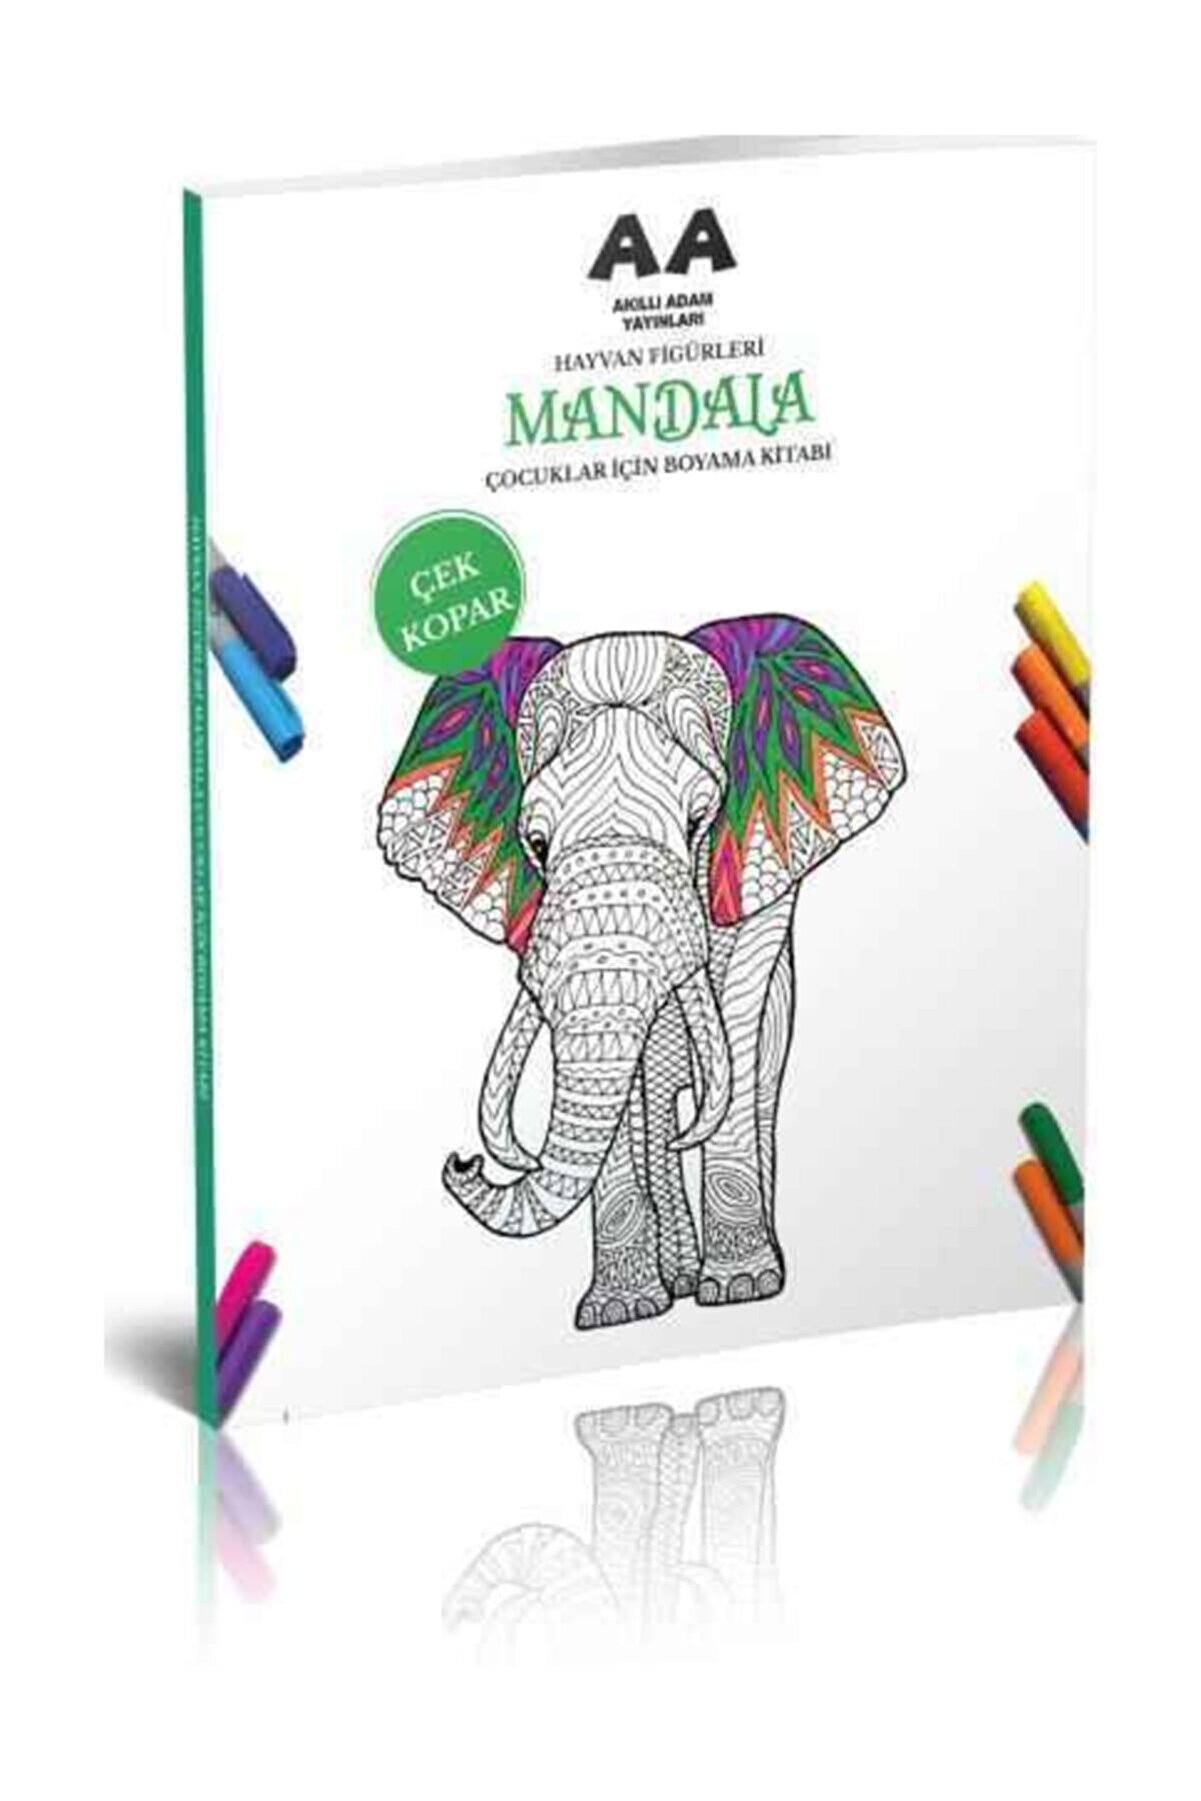 Akıllı Adam Yayınları Hayvan Figürleri Mandala Çocuklar Için Boyama Kitabı